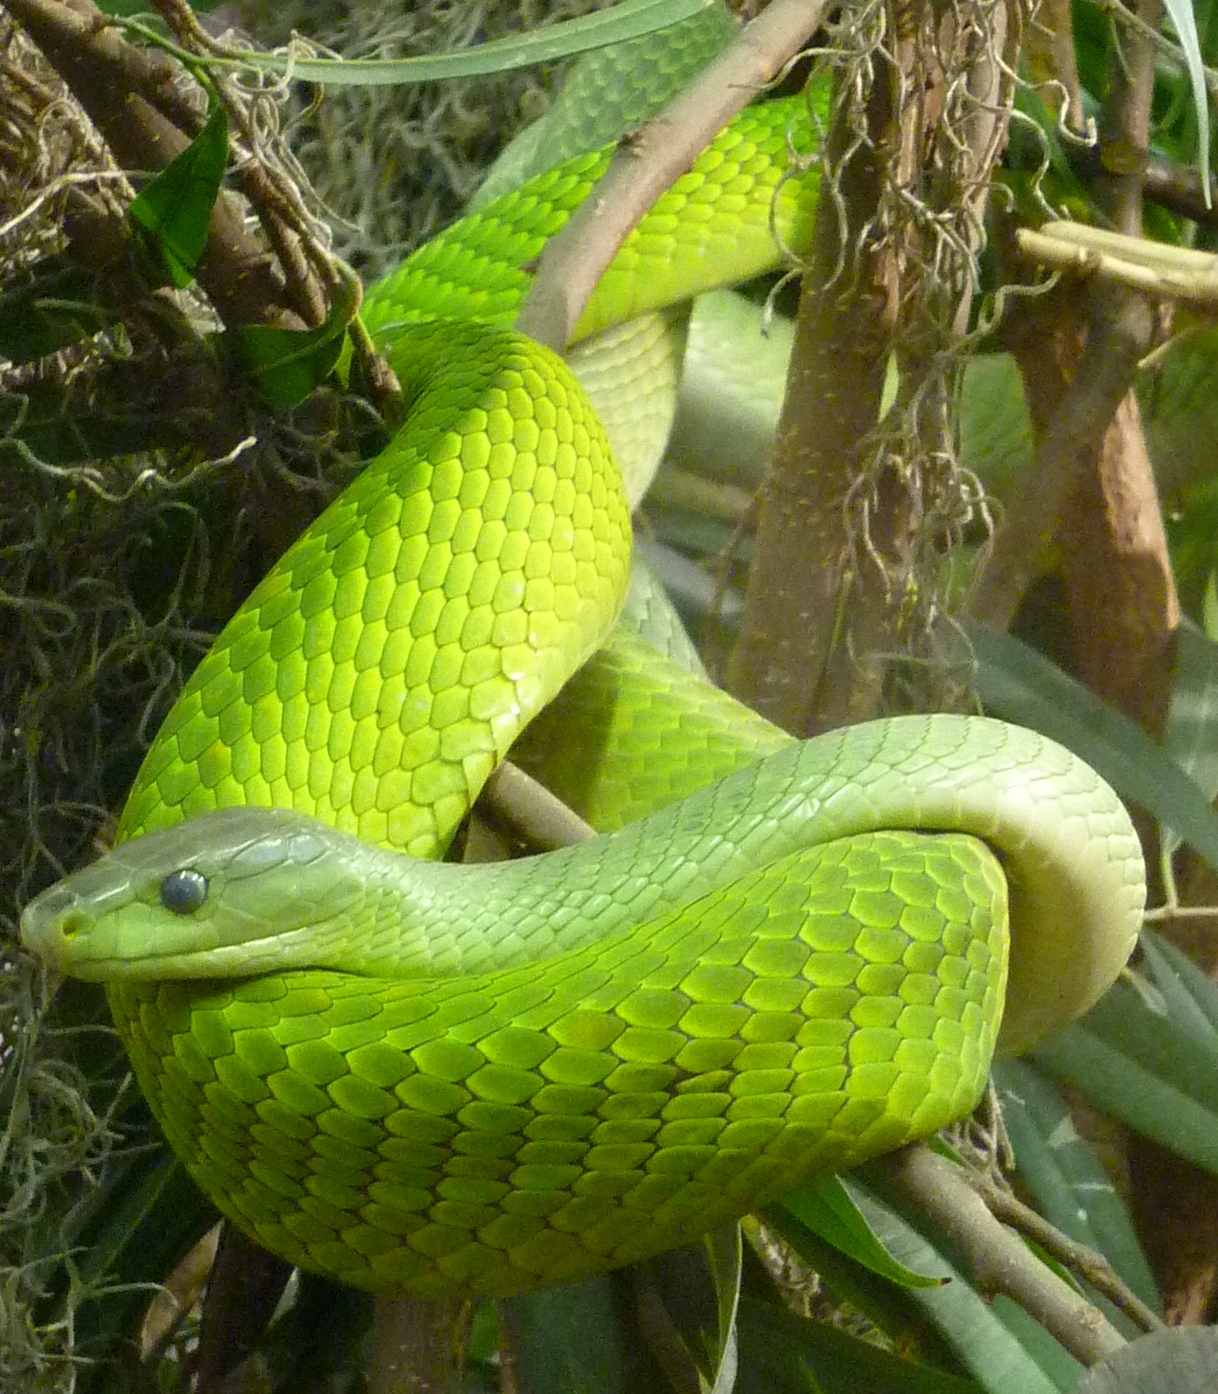 Escamas de las serpientes - Wikipedia, la enciclopedia libre